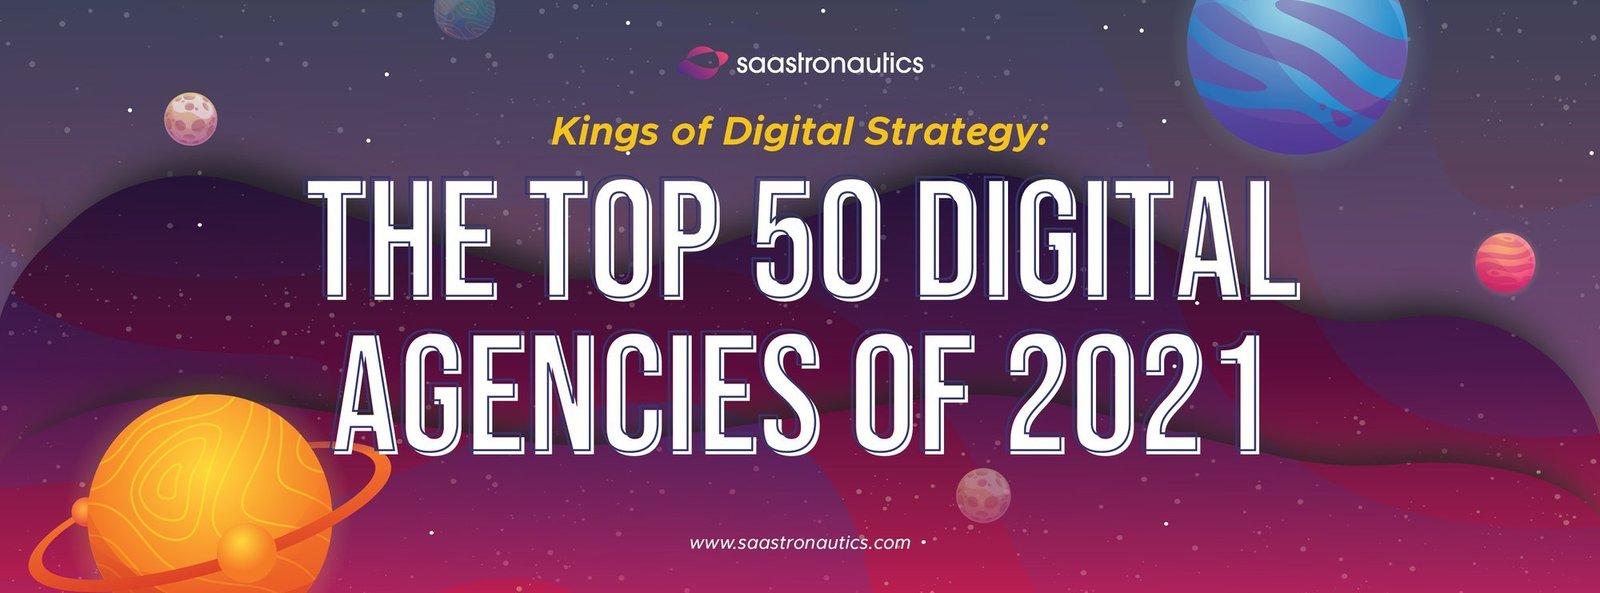 Kings of Digital Strategy: The Top 50 Digital Agencies of 2021